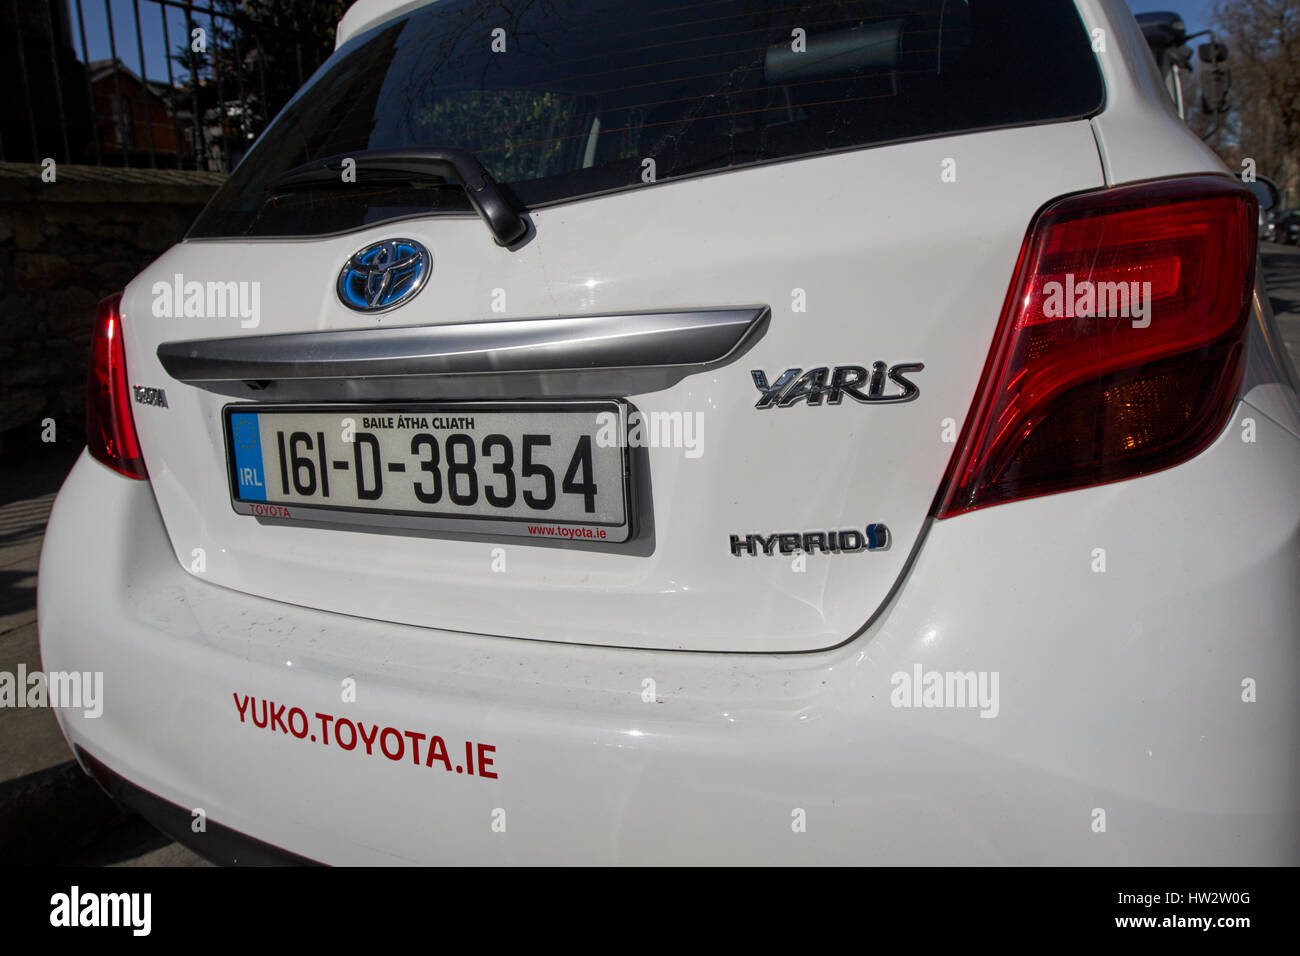 Toyota Yaris Hybrid city car yuko car sharing club oraria veicolo a noleggio centro della città di Dublino Repubblica di Irlanda Foto Stock